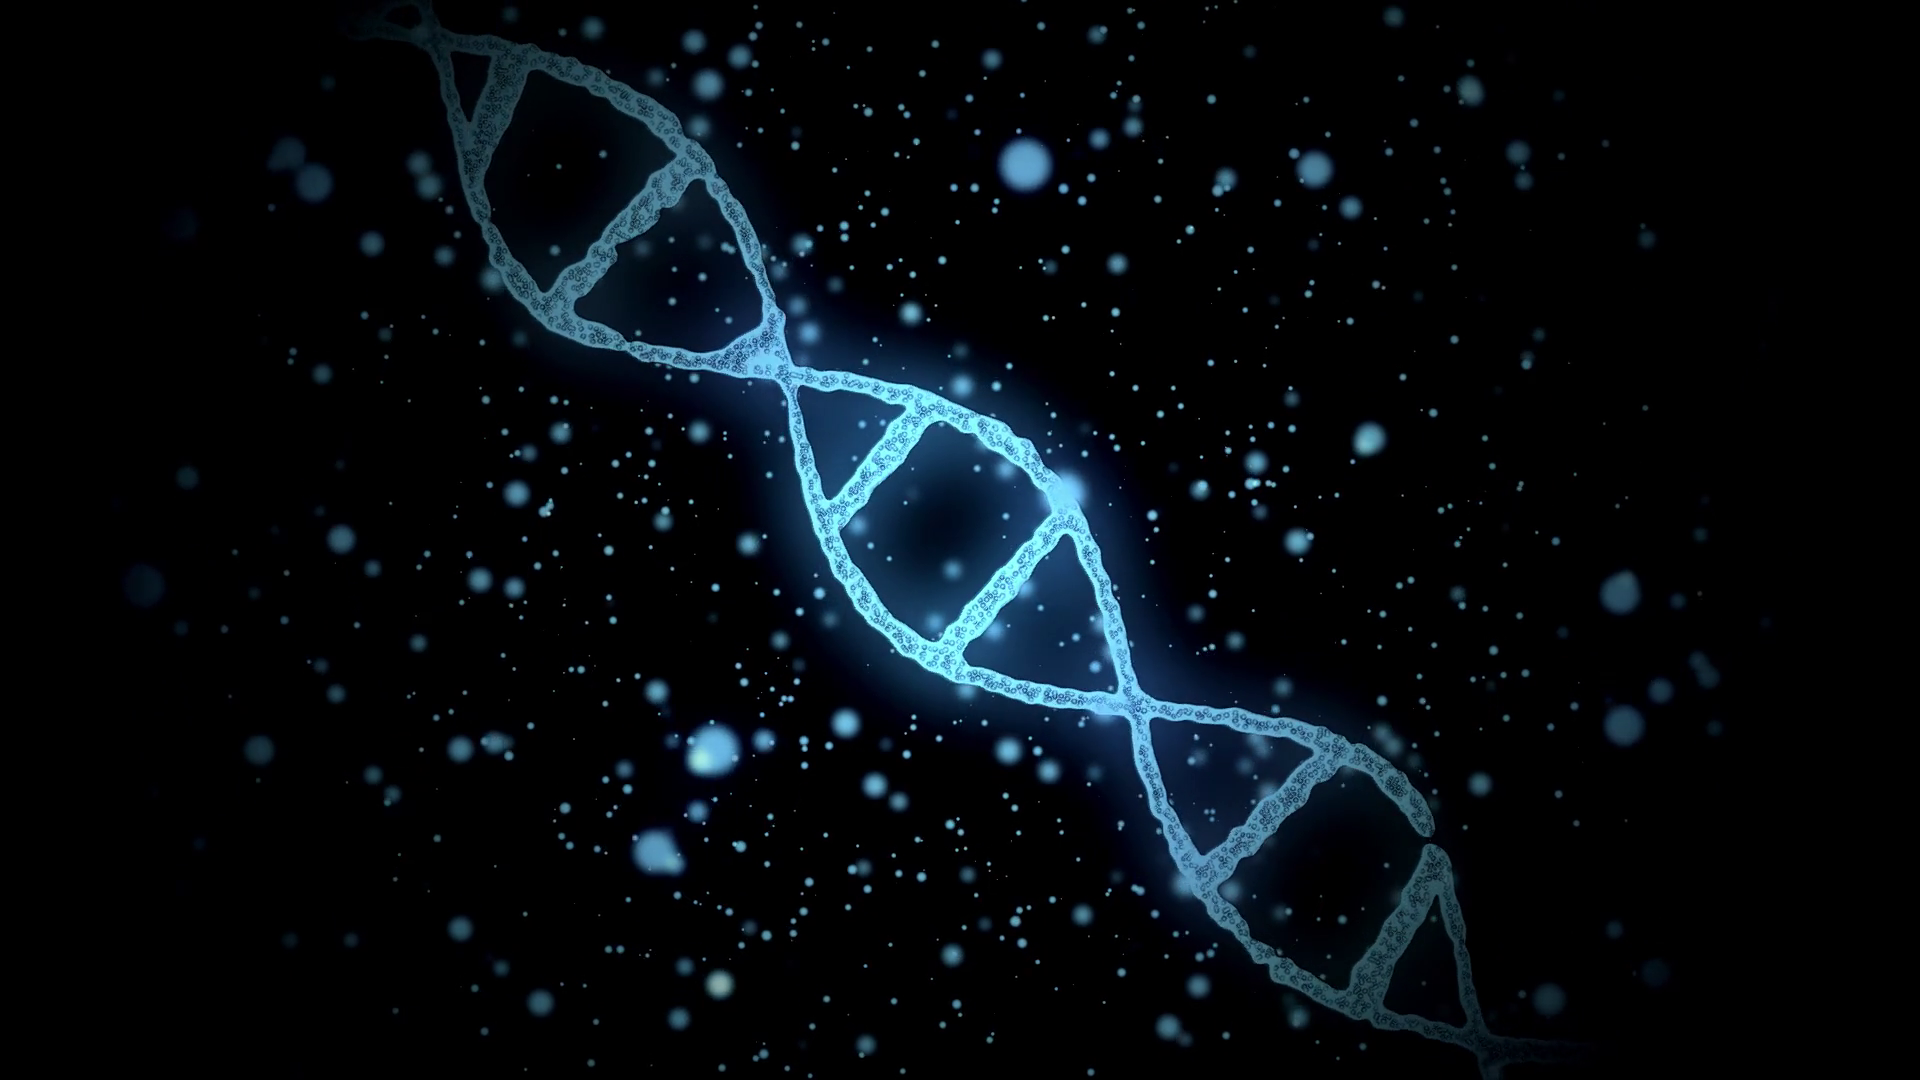 Днк без рекламы ютуб. ДНК на черном фоне. Спираль ДНК. Молекула ДНК на черном фоне. Цепочка ДНК.